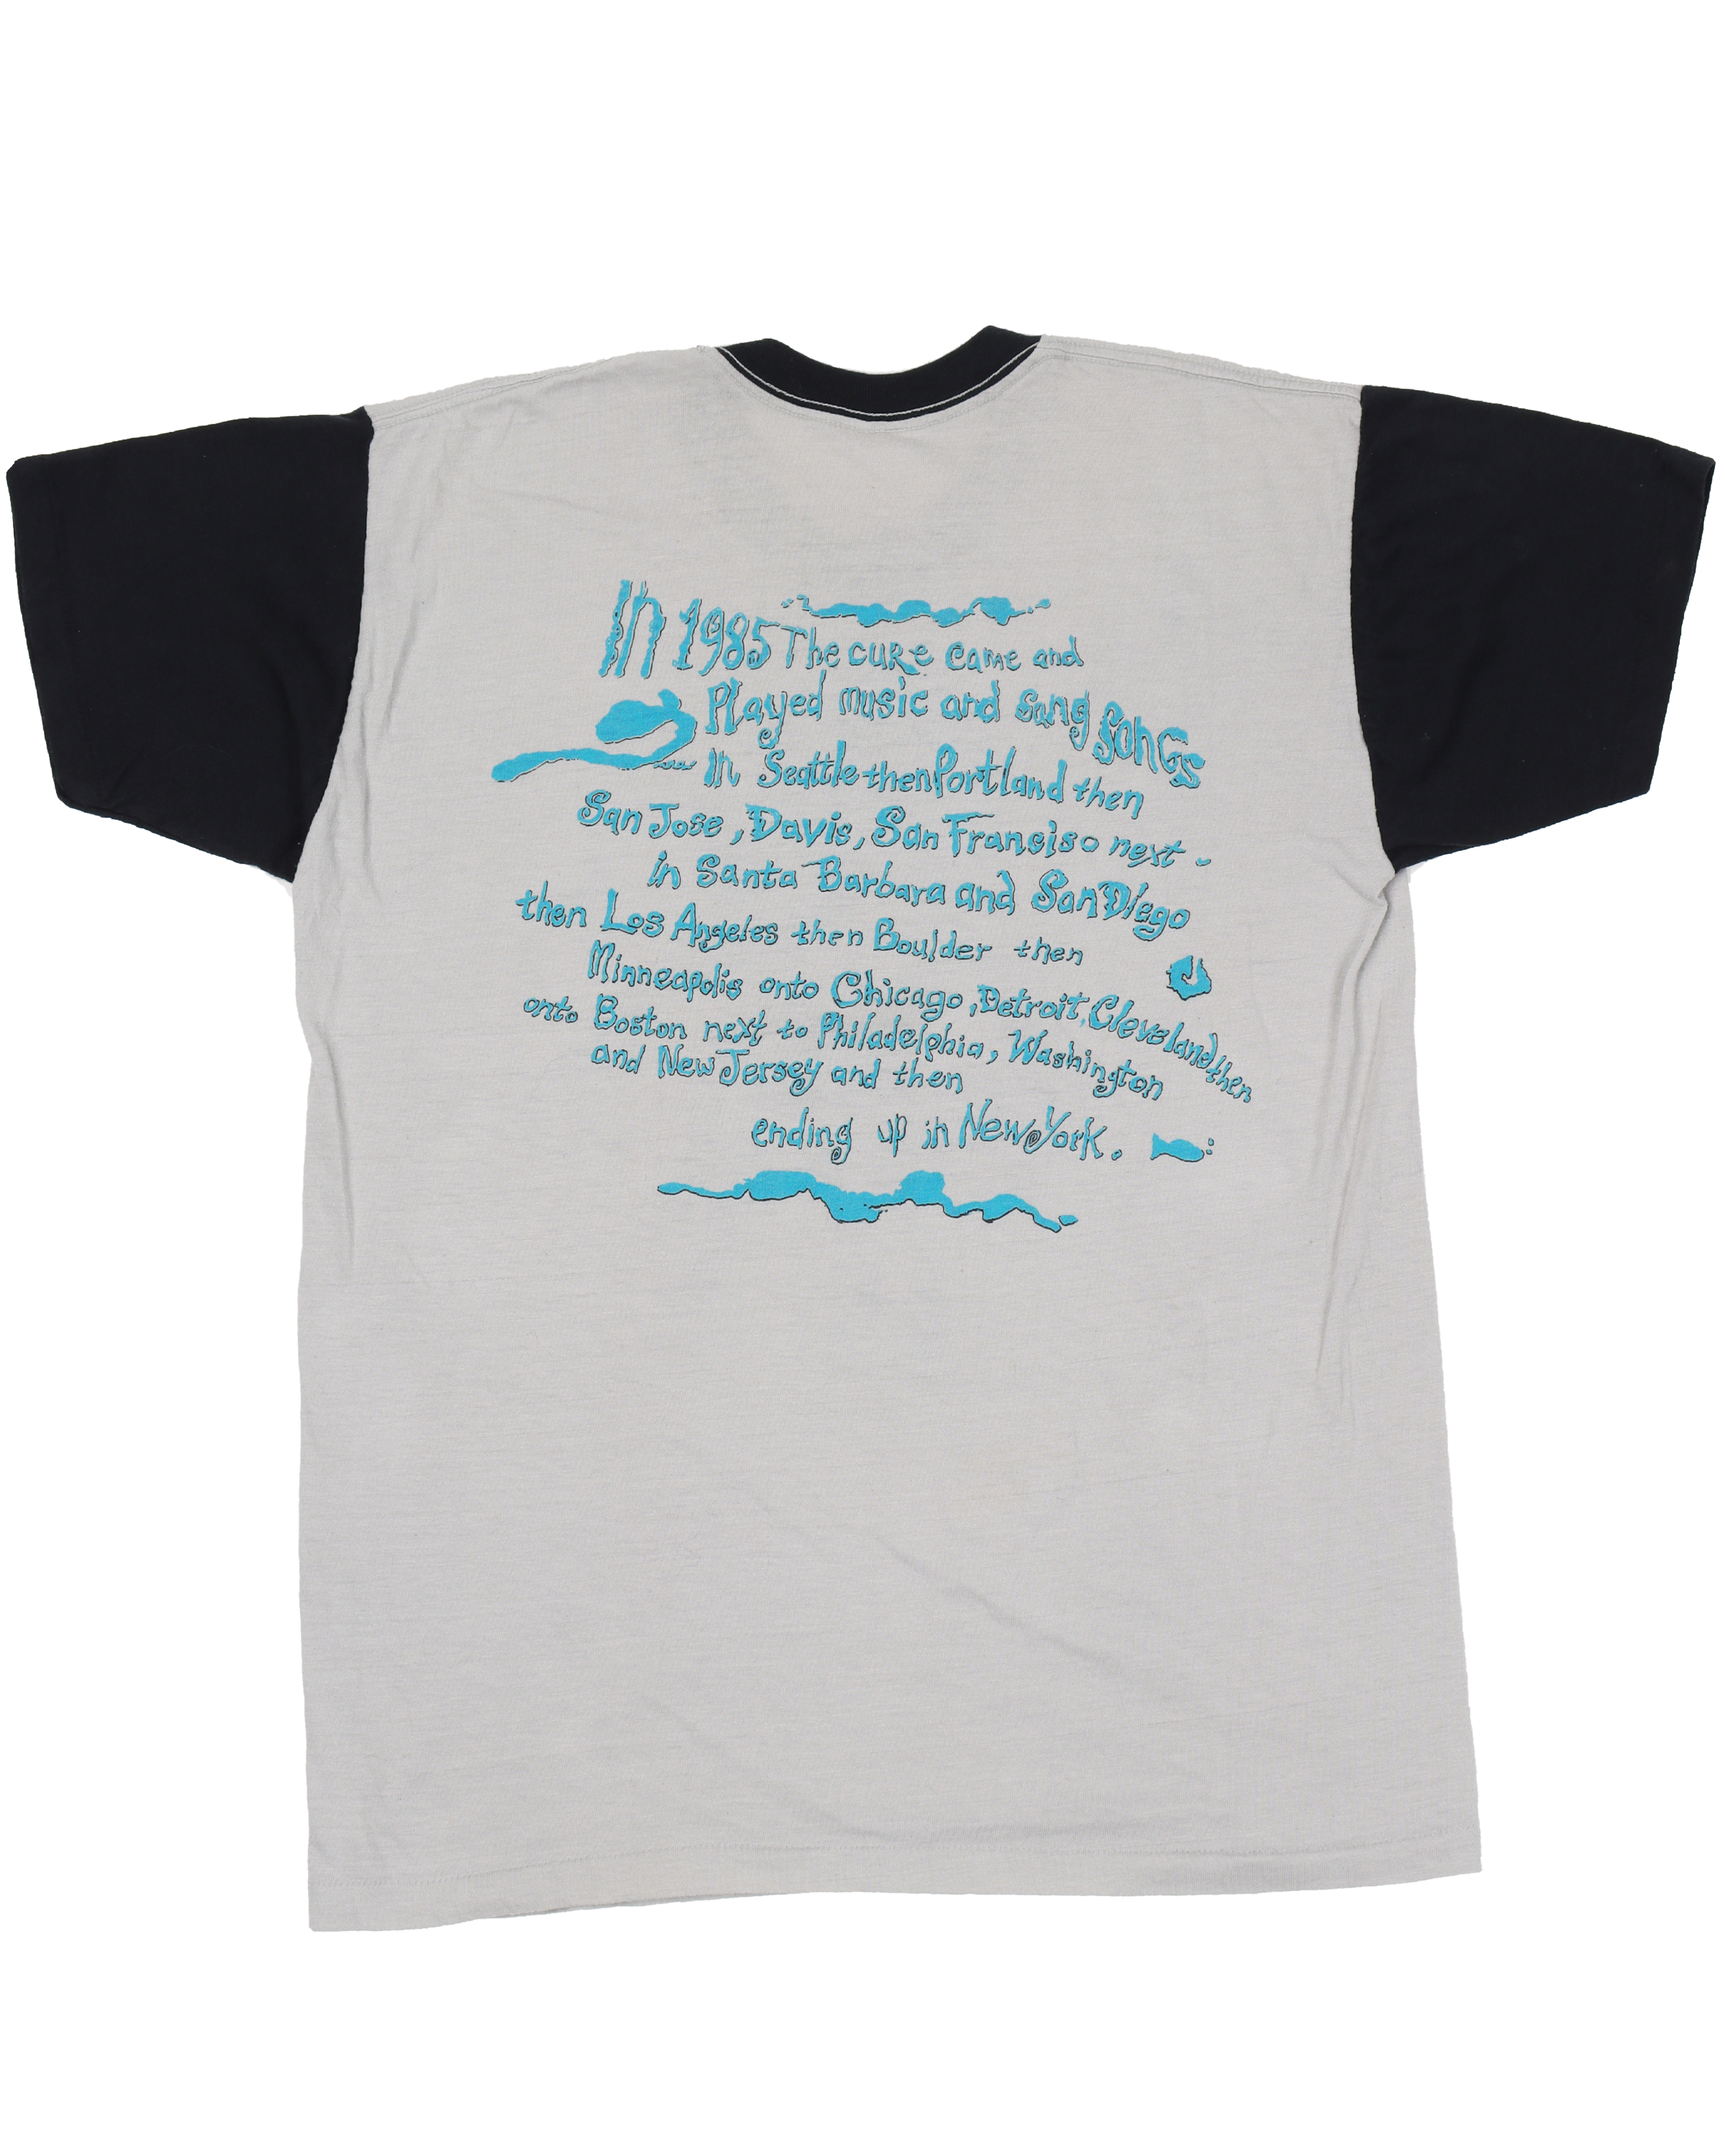 The Cure 1985 Tour T-Shirt